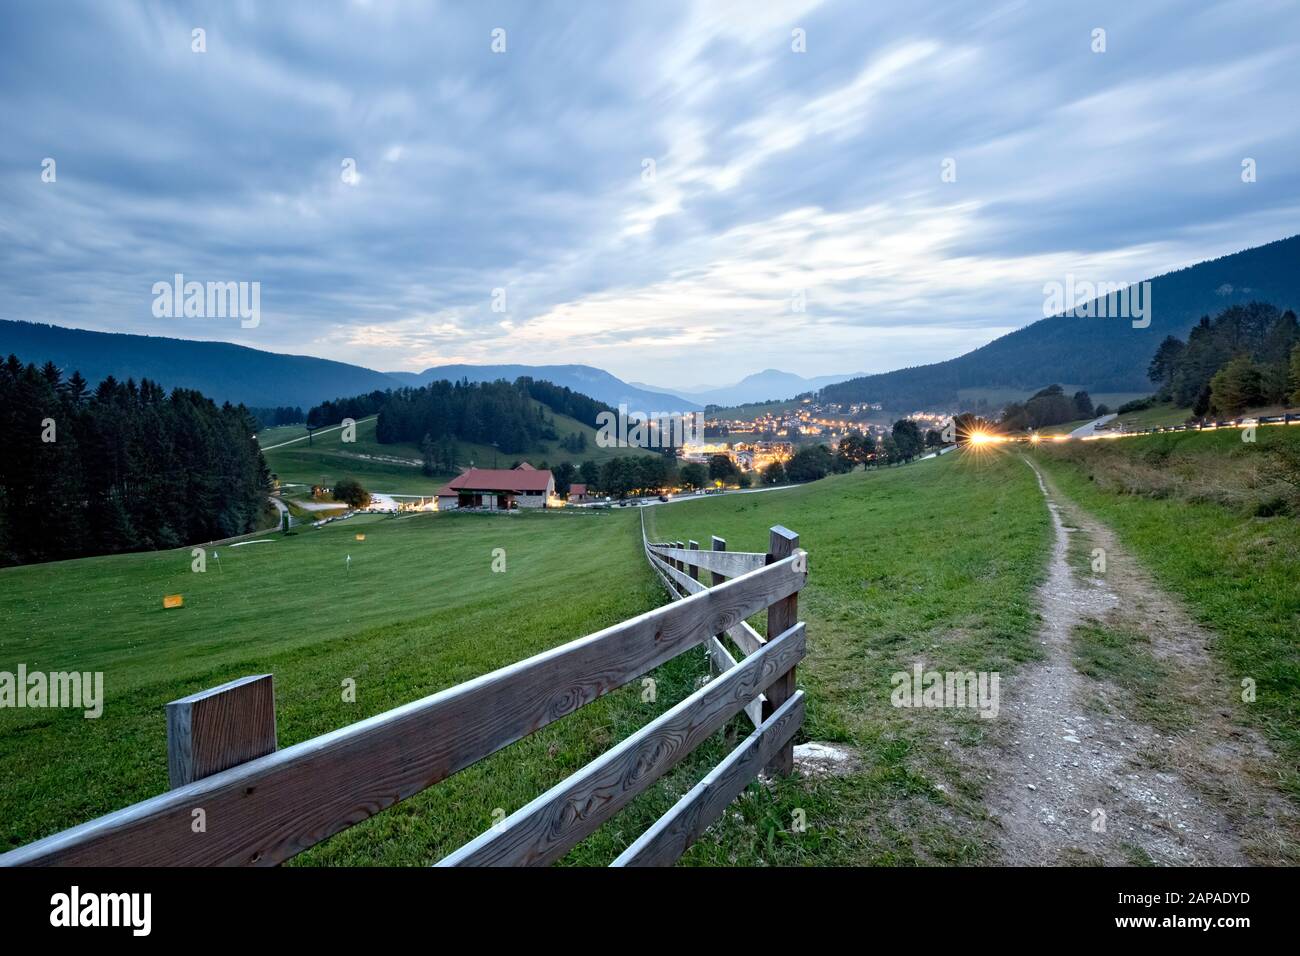 Fence near Maso Spilzi towards the meadows of Folgaria and the village of Costa. Cimbra Alp, Trento province, Trentino Alto-Adige, Italy, Europe. Stock Photo